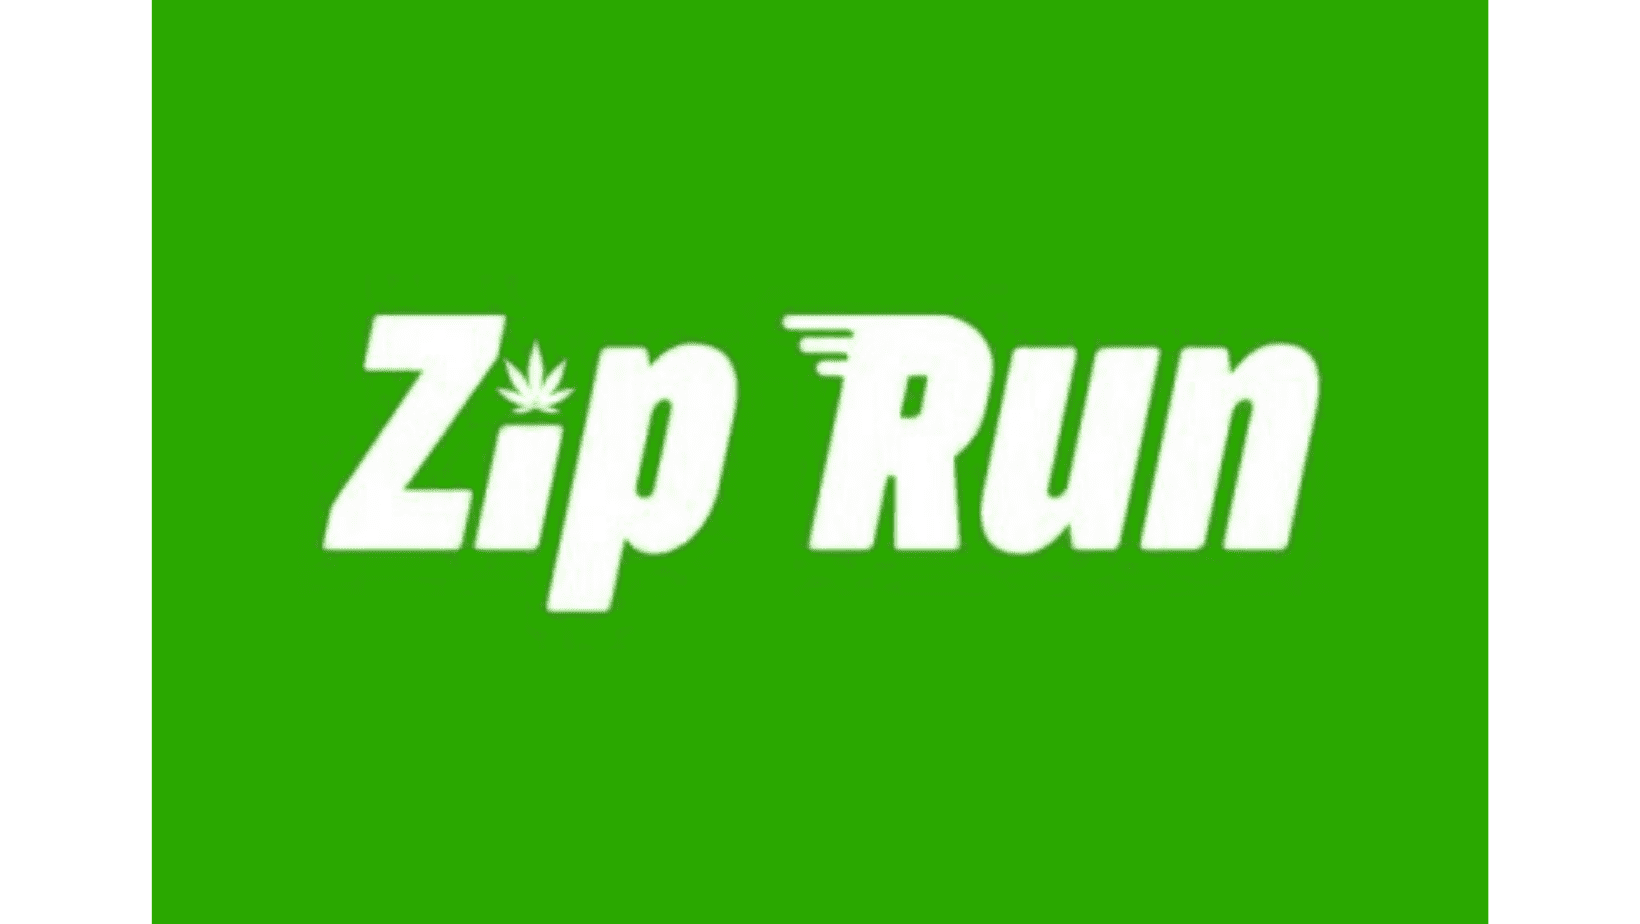 cannabis delivery boston zip run